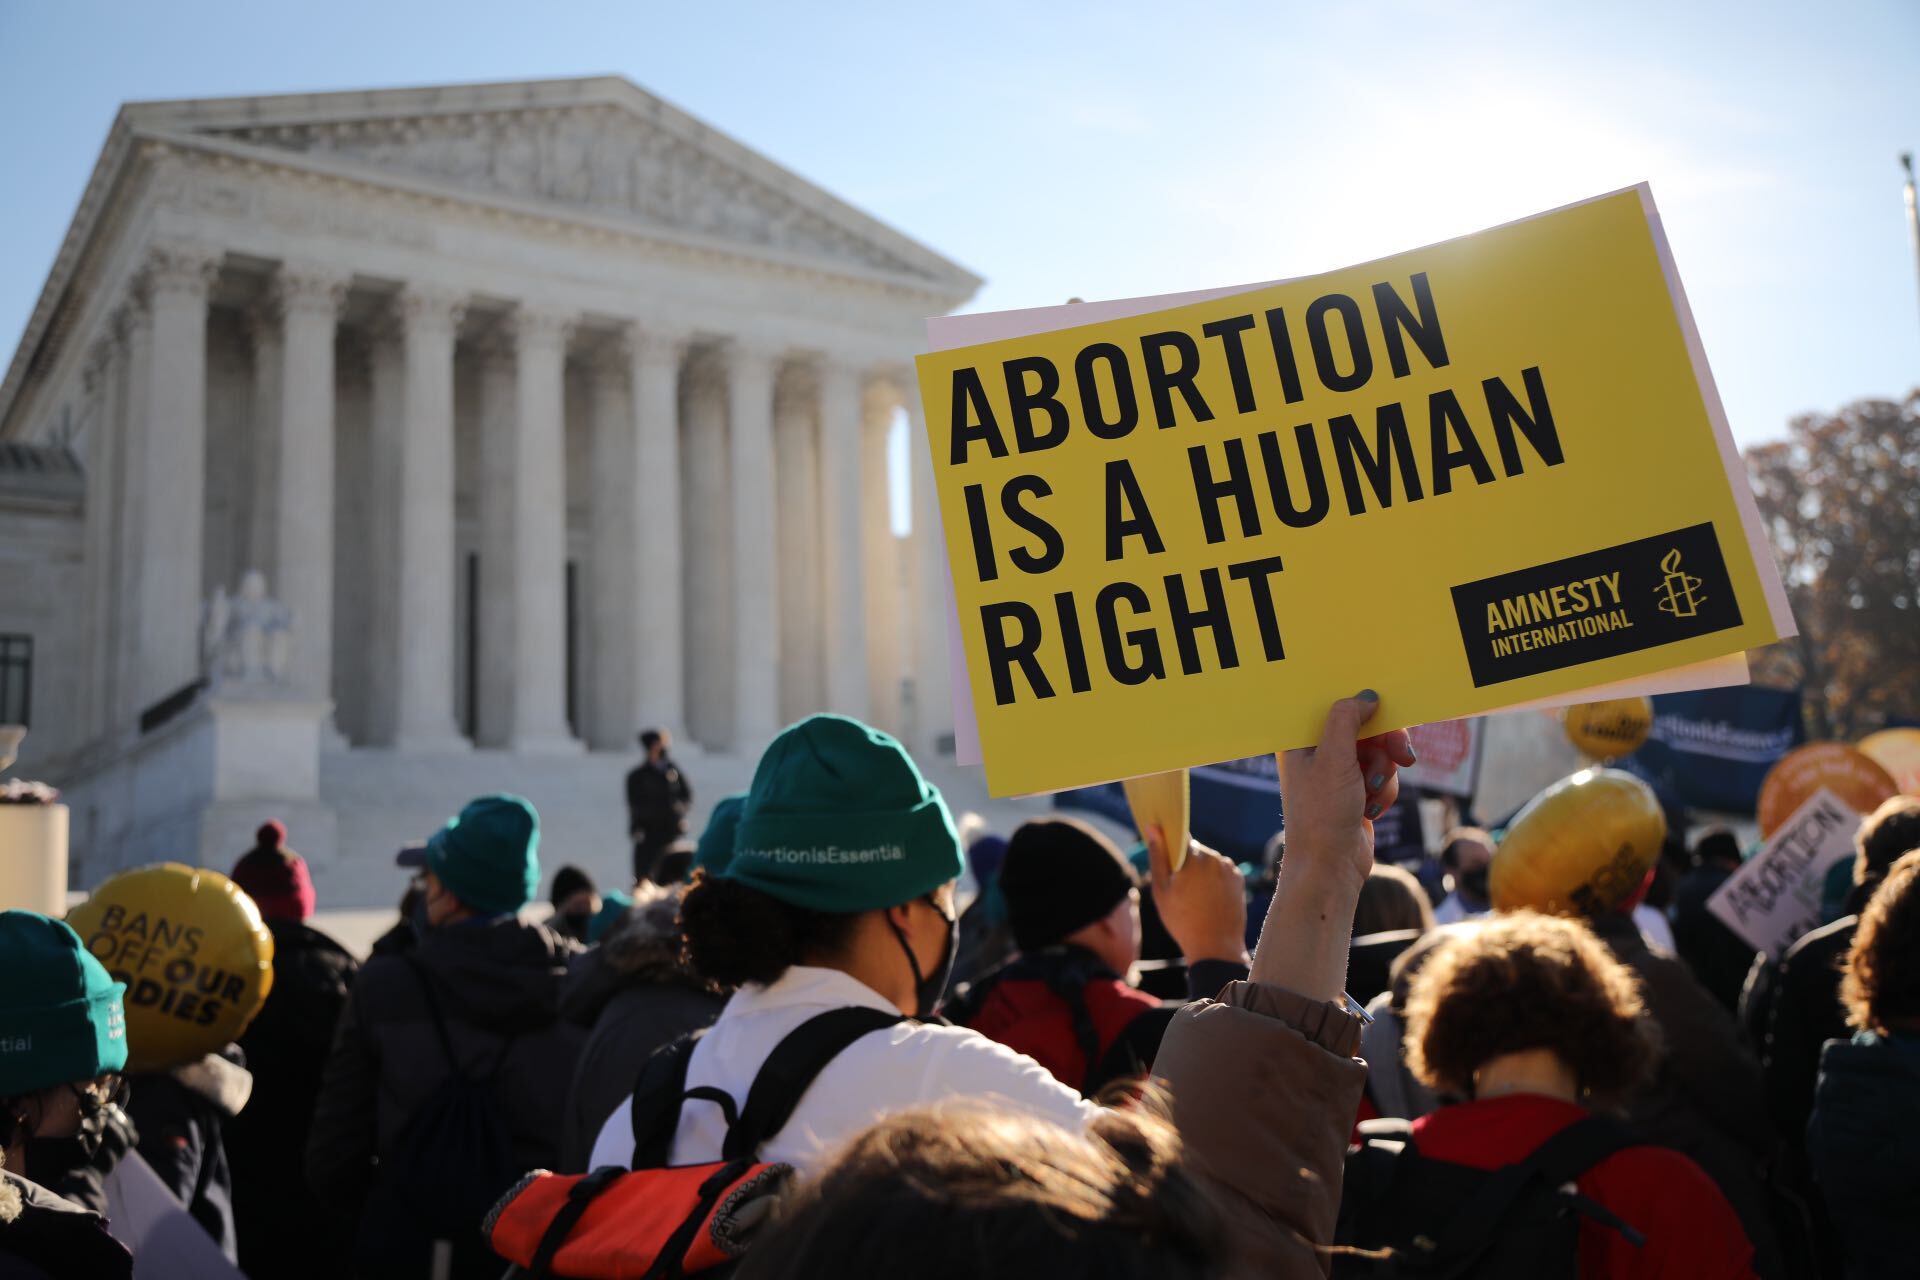 Estados Unidos: La Corte Suprema marca un triste hito en la historia del  país al anular el derecho al aborto